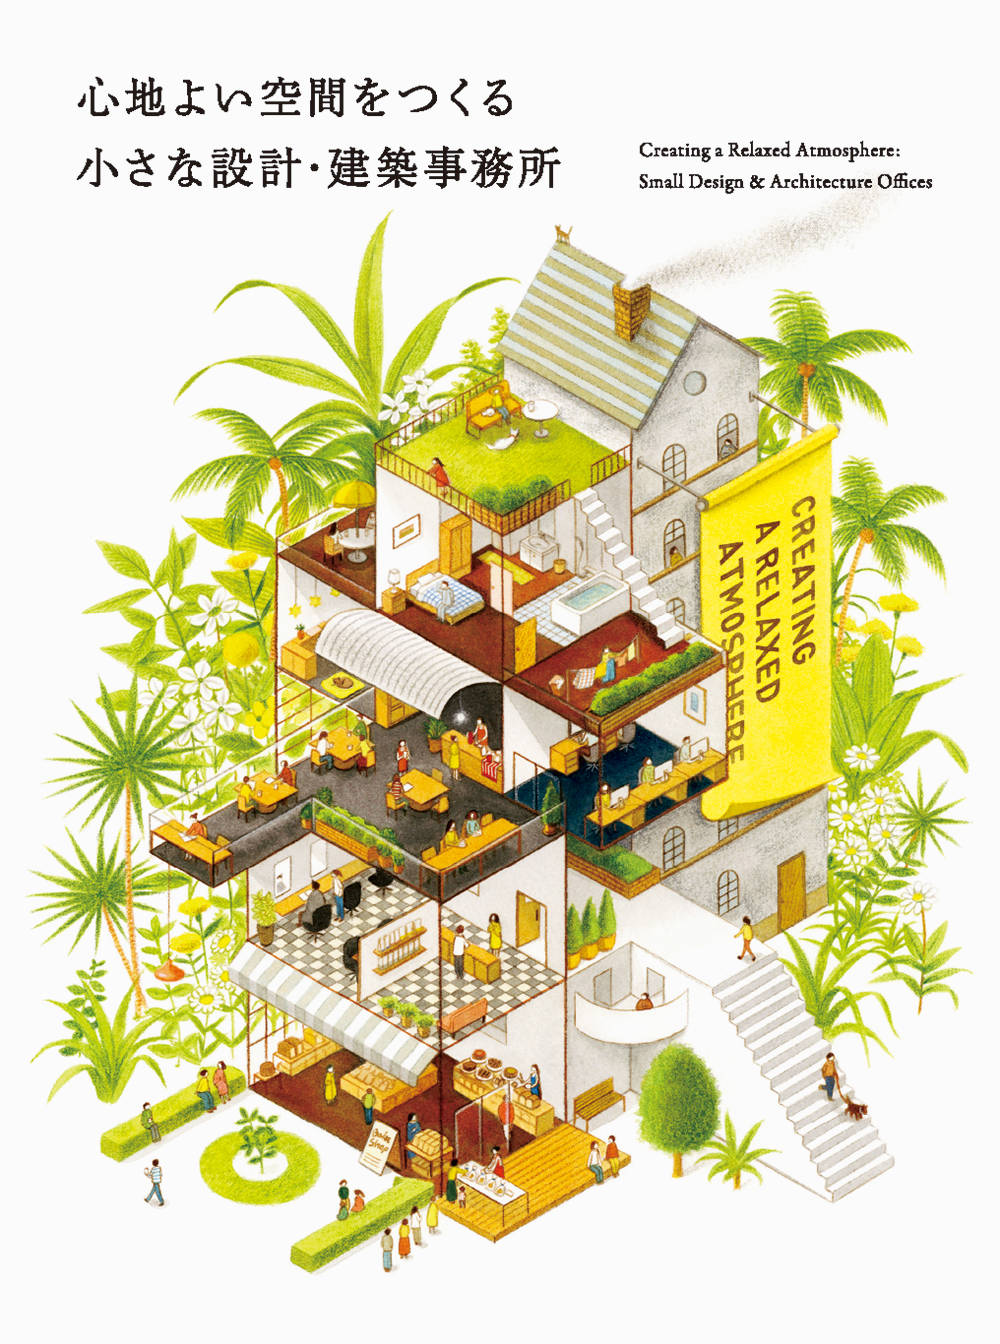 日本各地で活躍する設計士 建築士101人の仕事プロファイル 心地よい空間をつくる 小さな設計 建築事務所 発売 株式会社パイ インターナショナルのプレスリリース